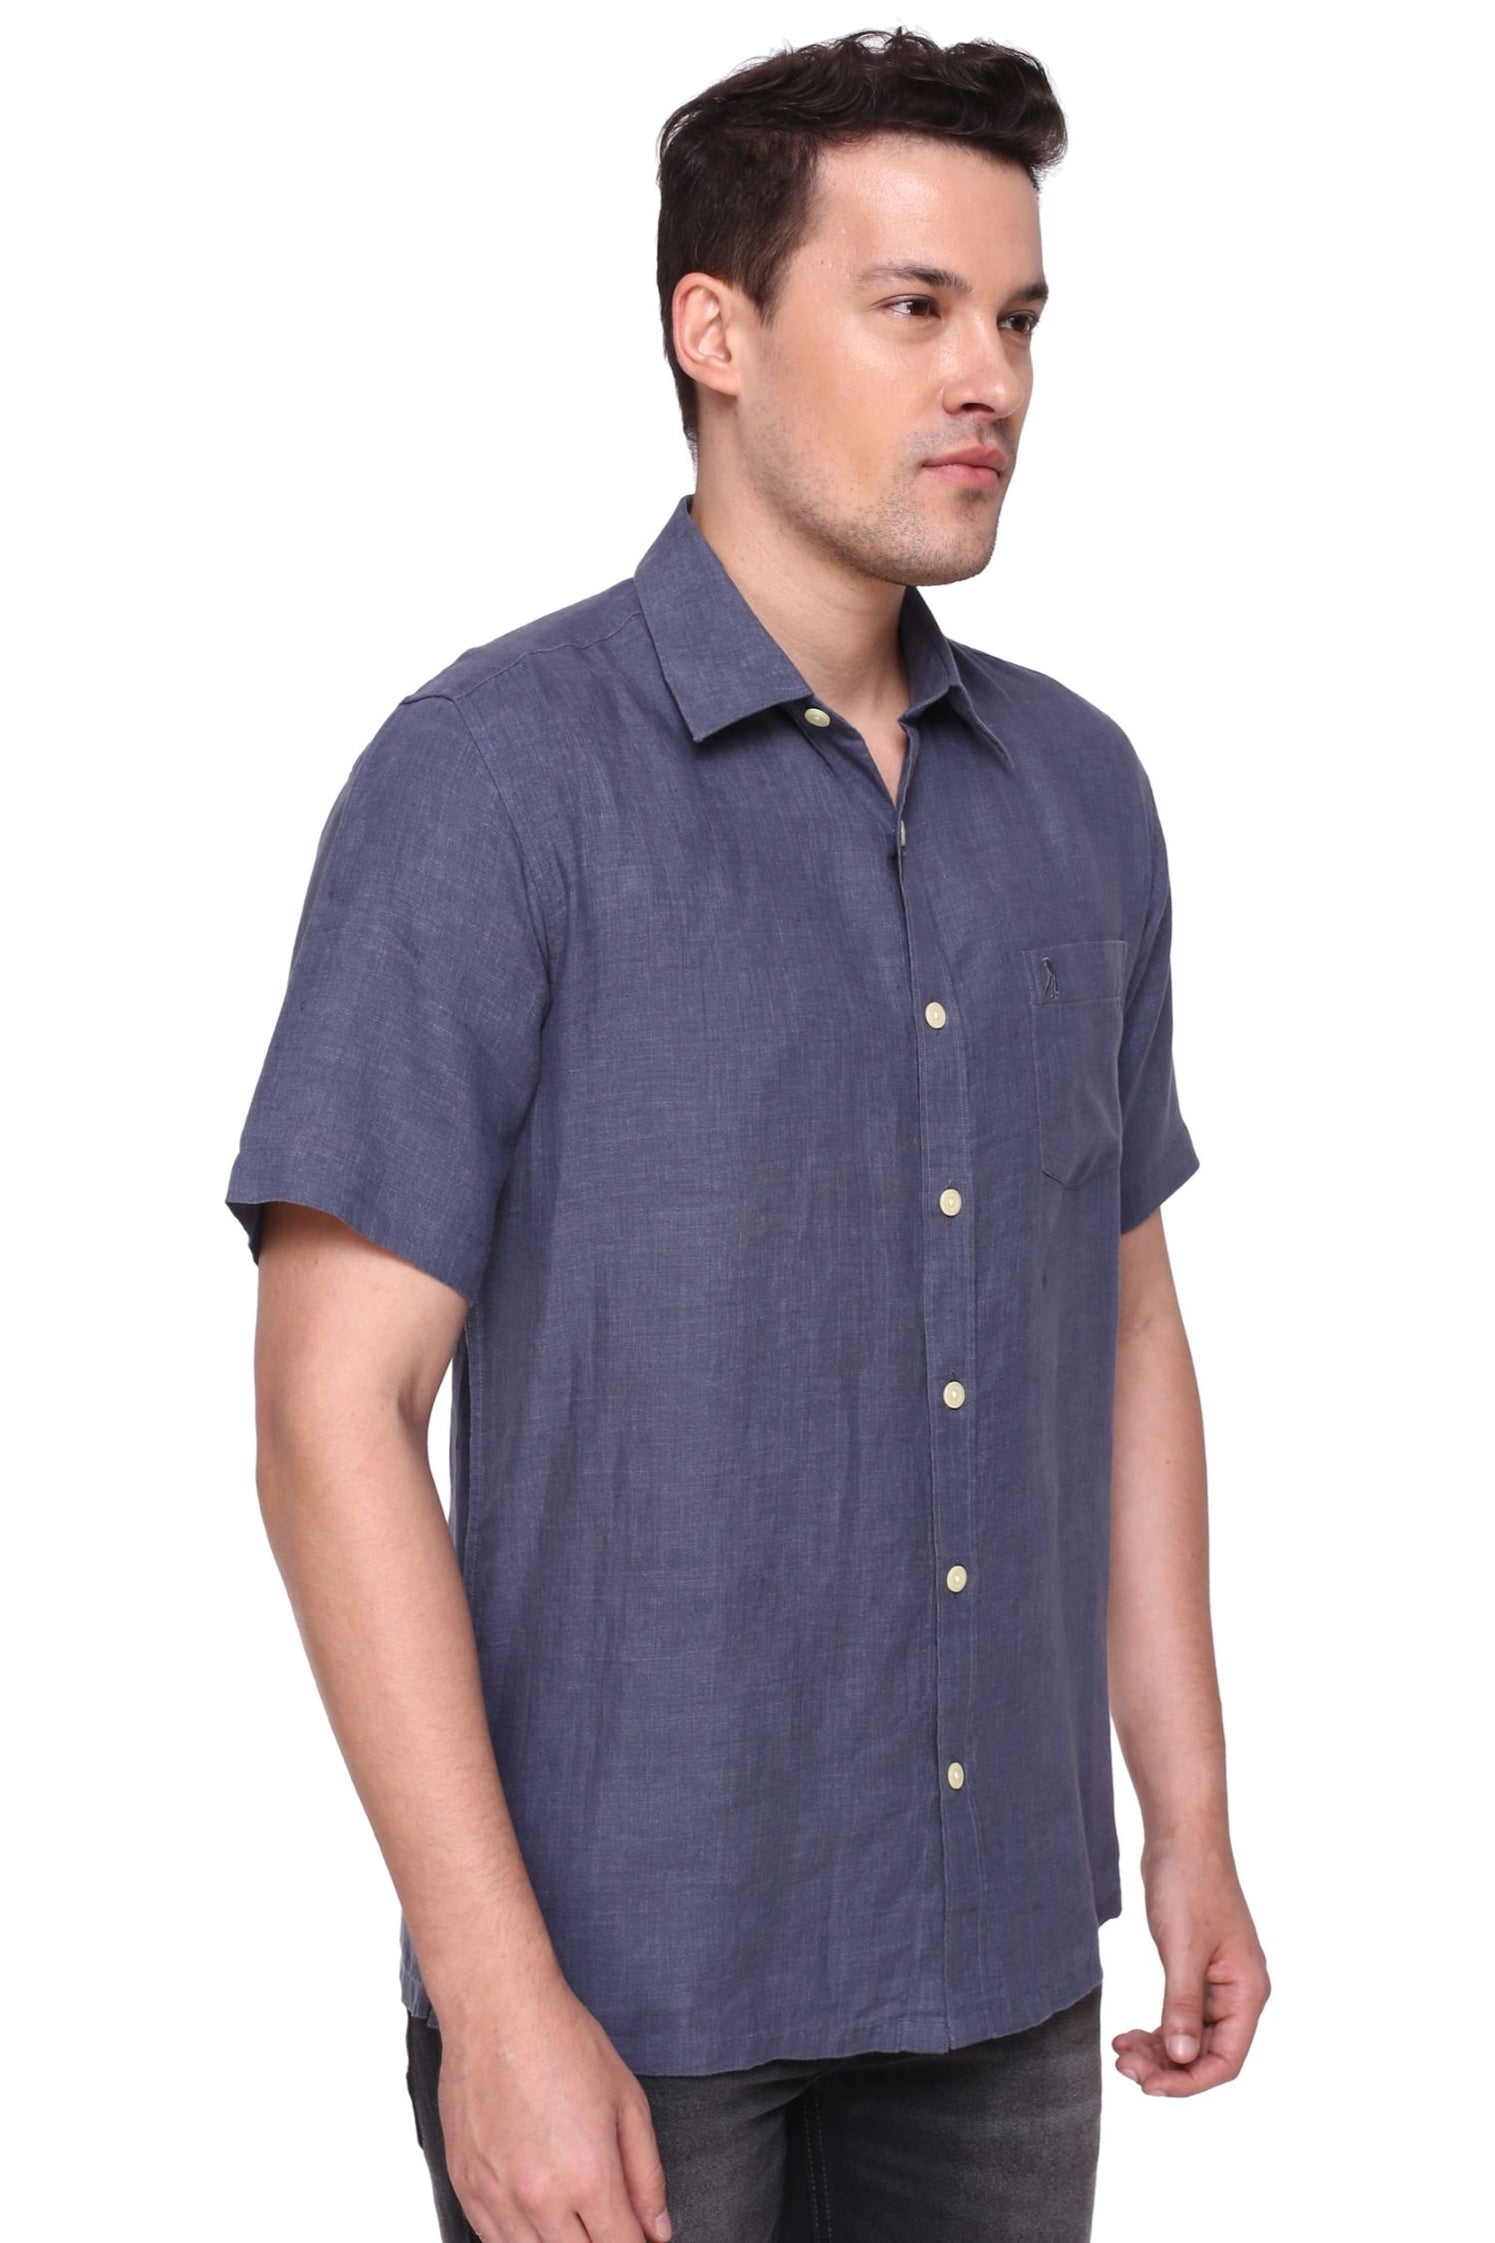 Zinc Half Sleeve Linen Shirt – Burnt Umber - Premium Men's Smart Casual ...